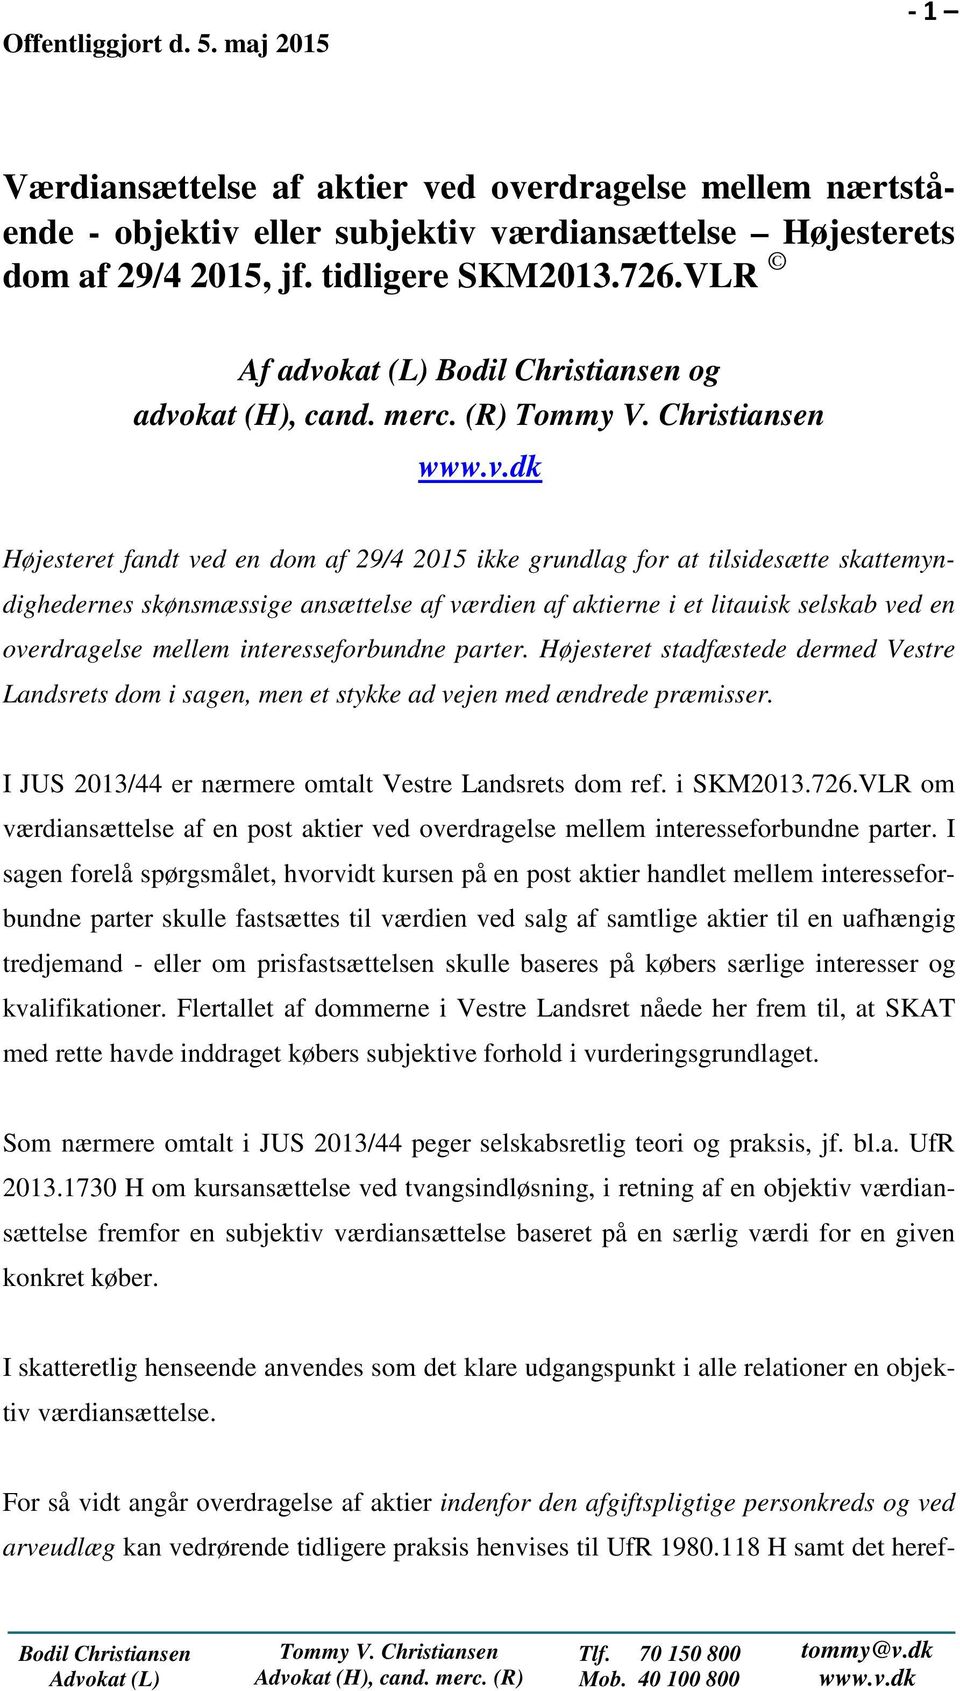 (R) Højesteret fandt ved en dom af 29/4 2015 ikke grundlag for at tilsidesætte skattemyndighedernes skønsmæssige ansættelse af værdien af aktierne i et litauisk selskab ved en overdragelse mellem